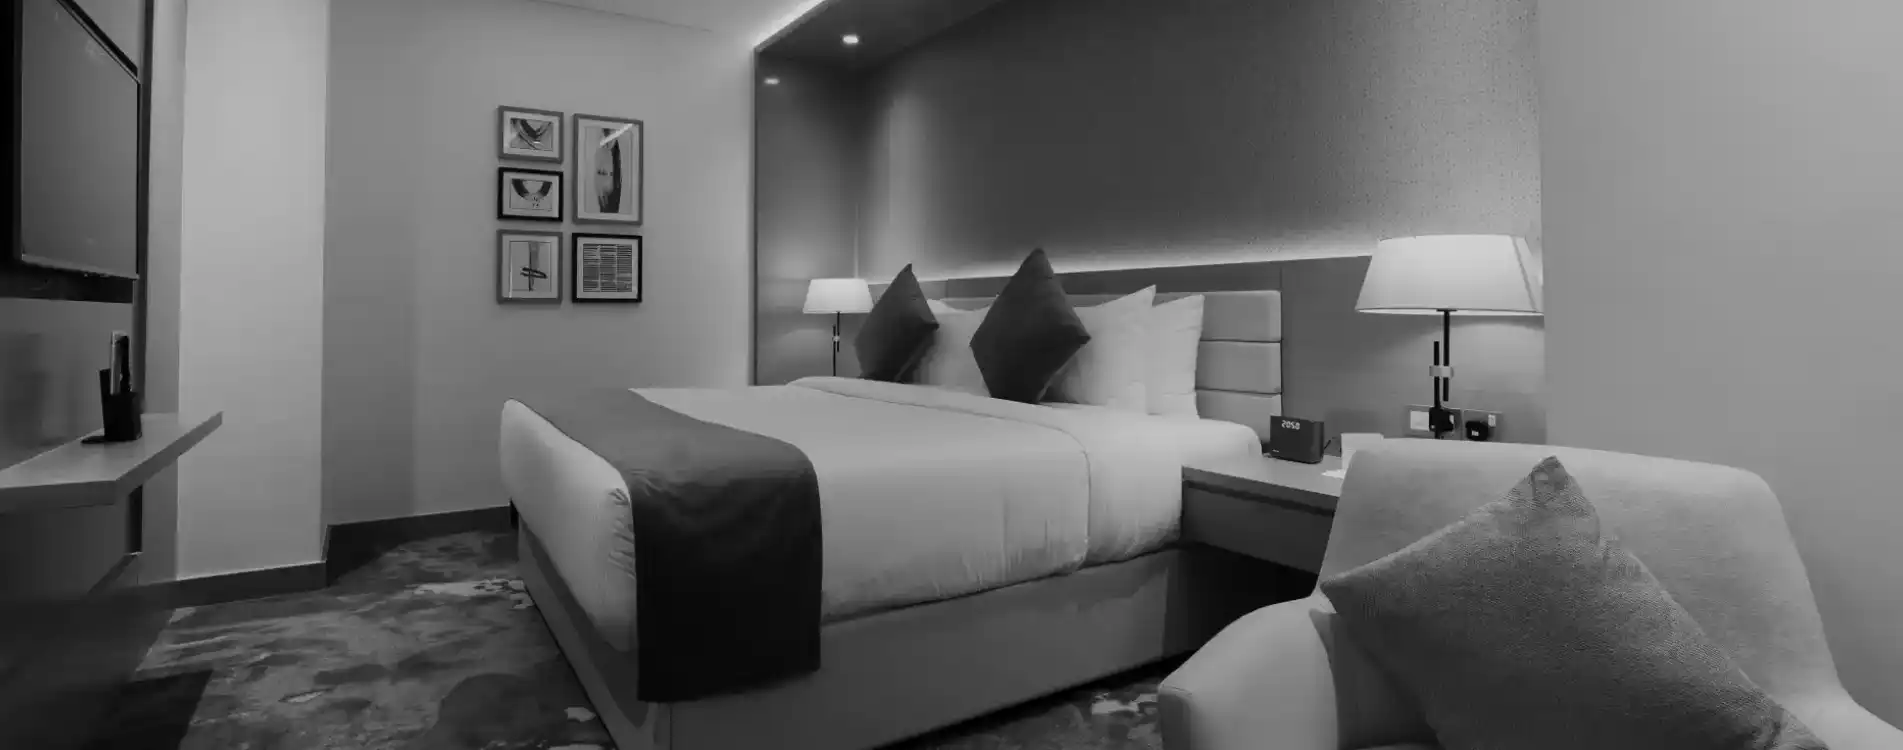 hotel supplies- bed linen